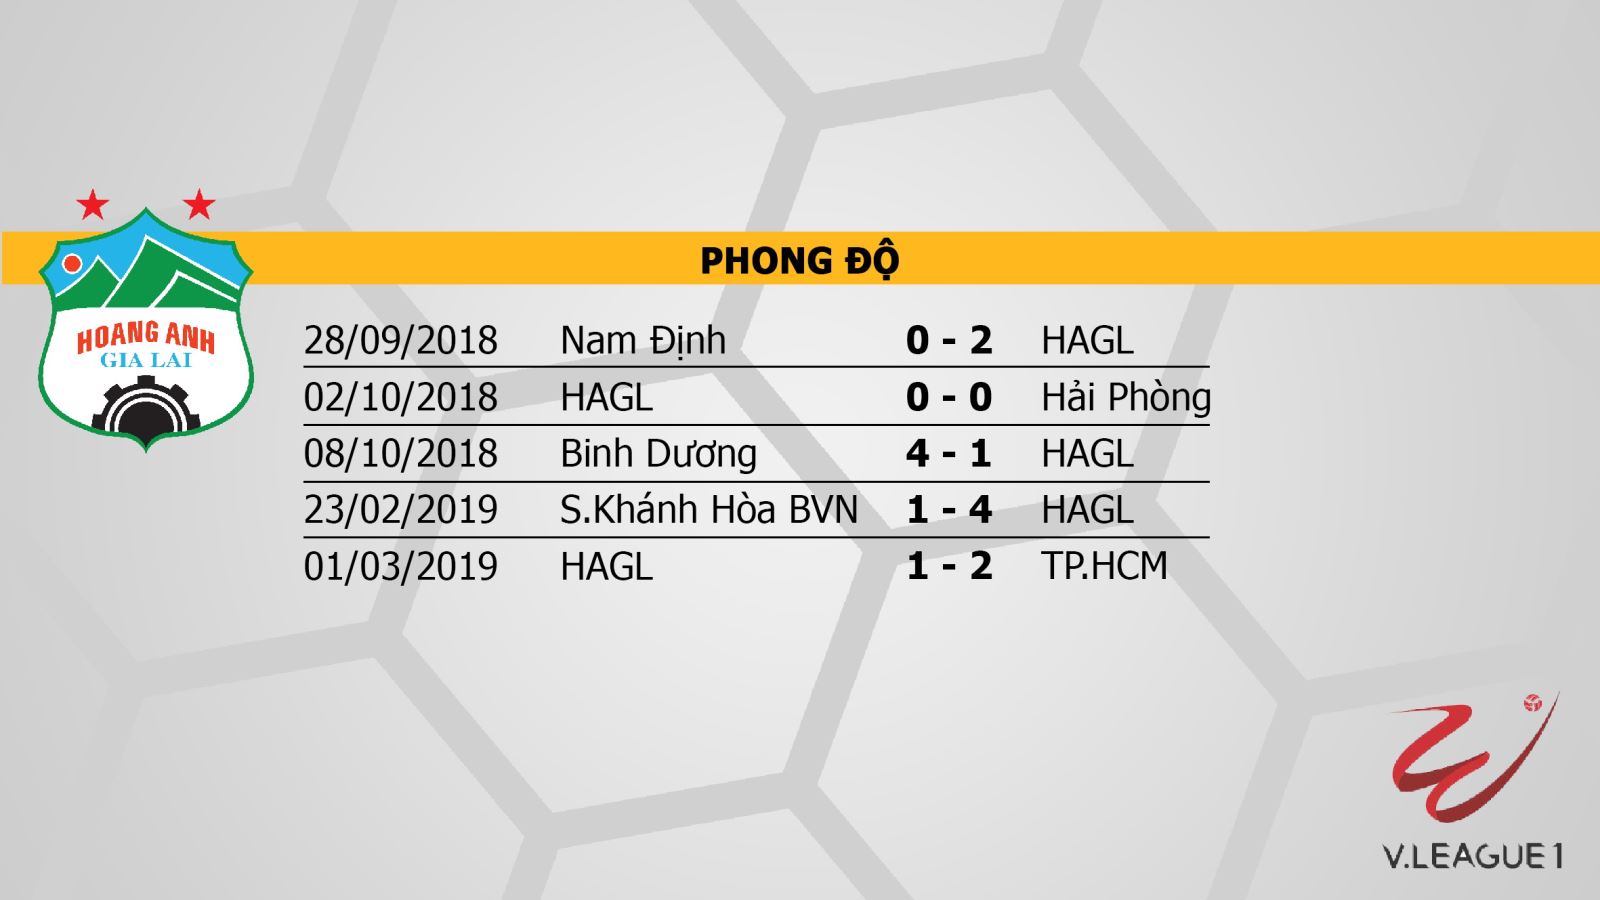 HAGL, VTV6, Hoàng Anh Gia Lai, trực tiếp bóng đá, truc tiep bong da, HAGL vs Sài Gòn, xem VTV6, trực tiếp HAGL, vòng 2 v-league 2019, v-league 2019, truc tiep HAGL